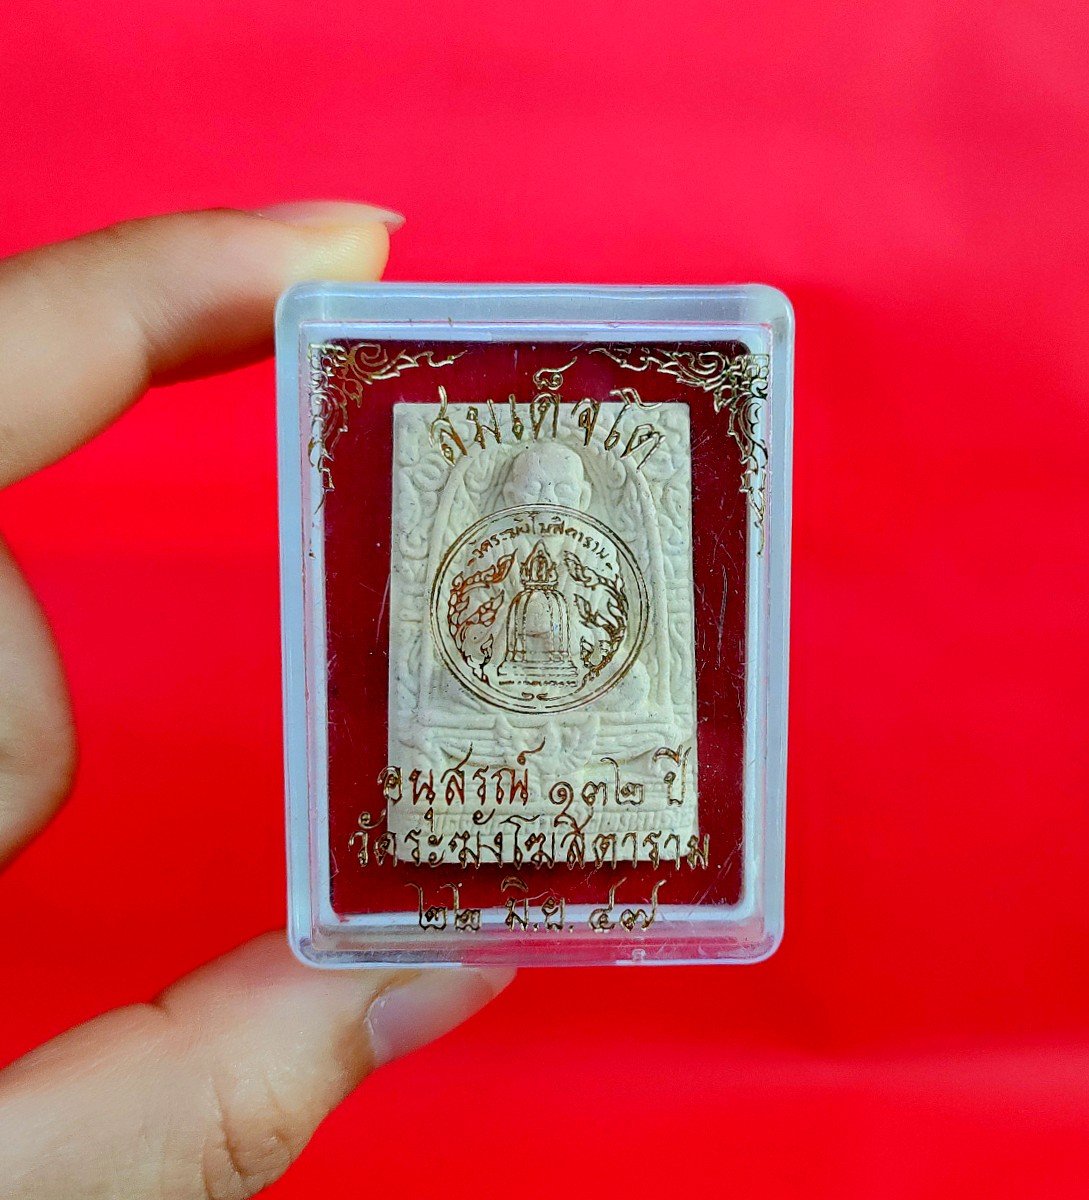 G113 Gift Box Thai Buddha Amulet Phra Talisman Powerful LP Somdej Rakhang Charm